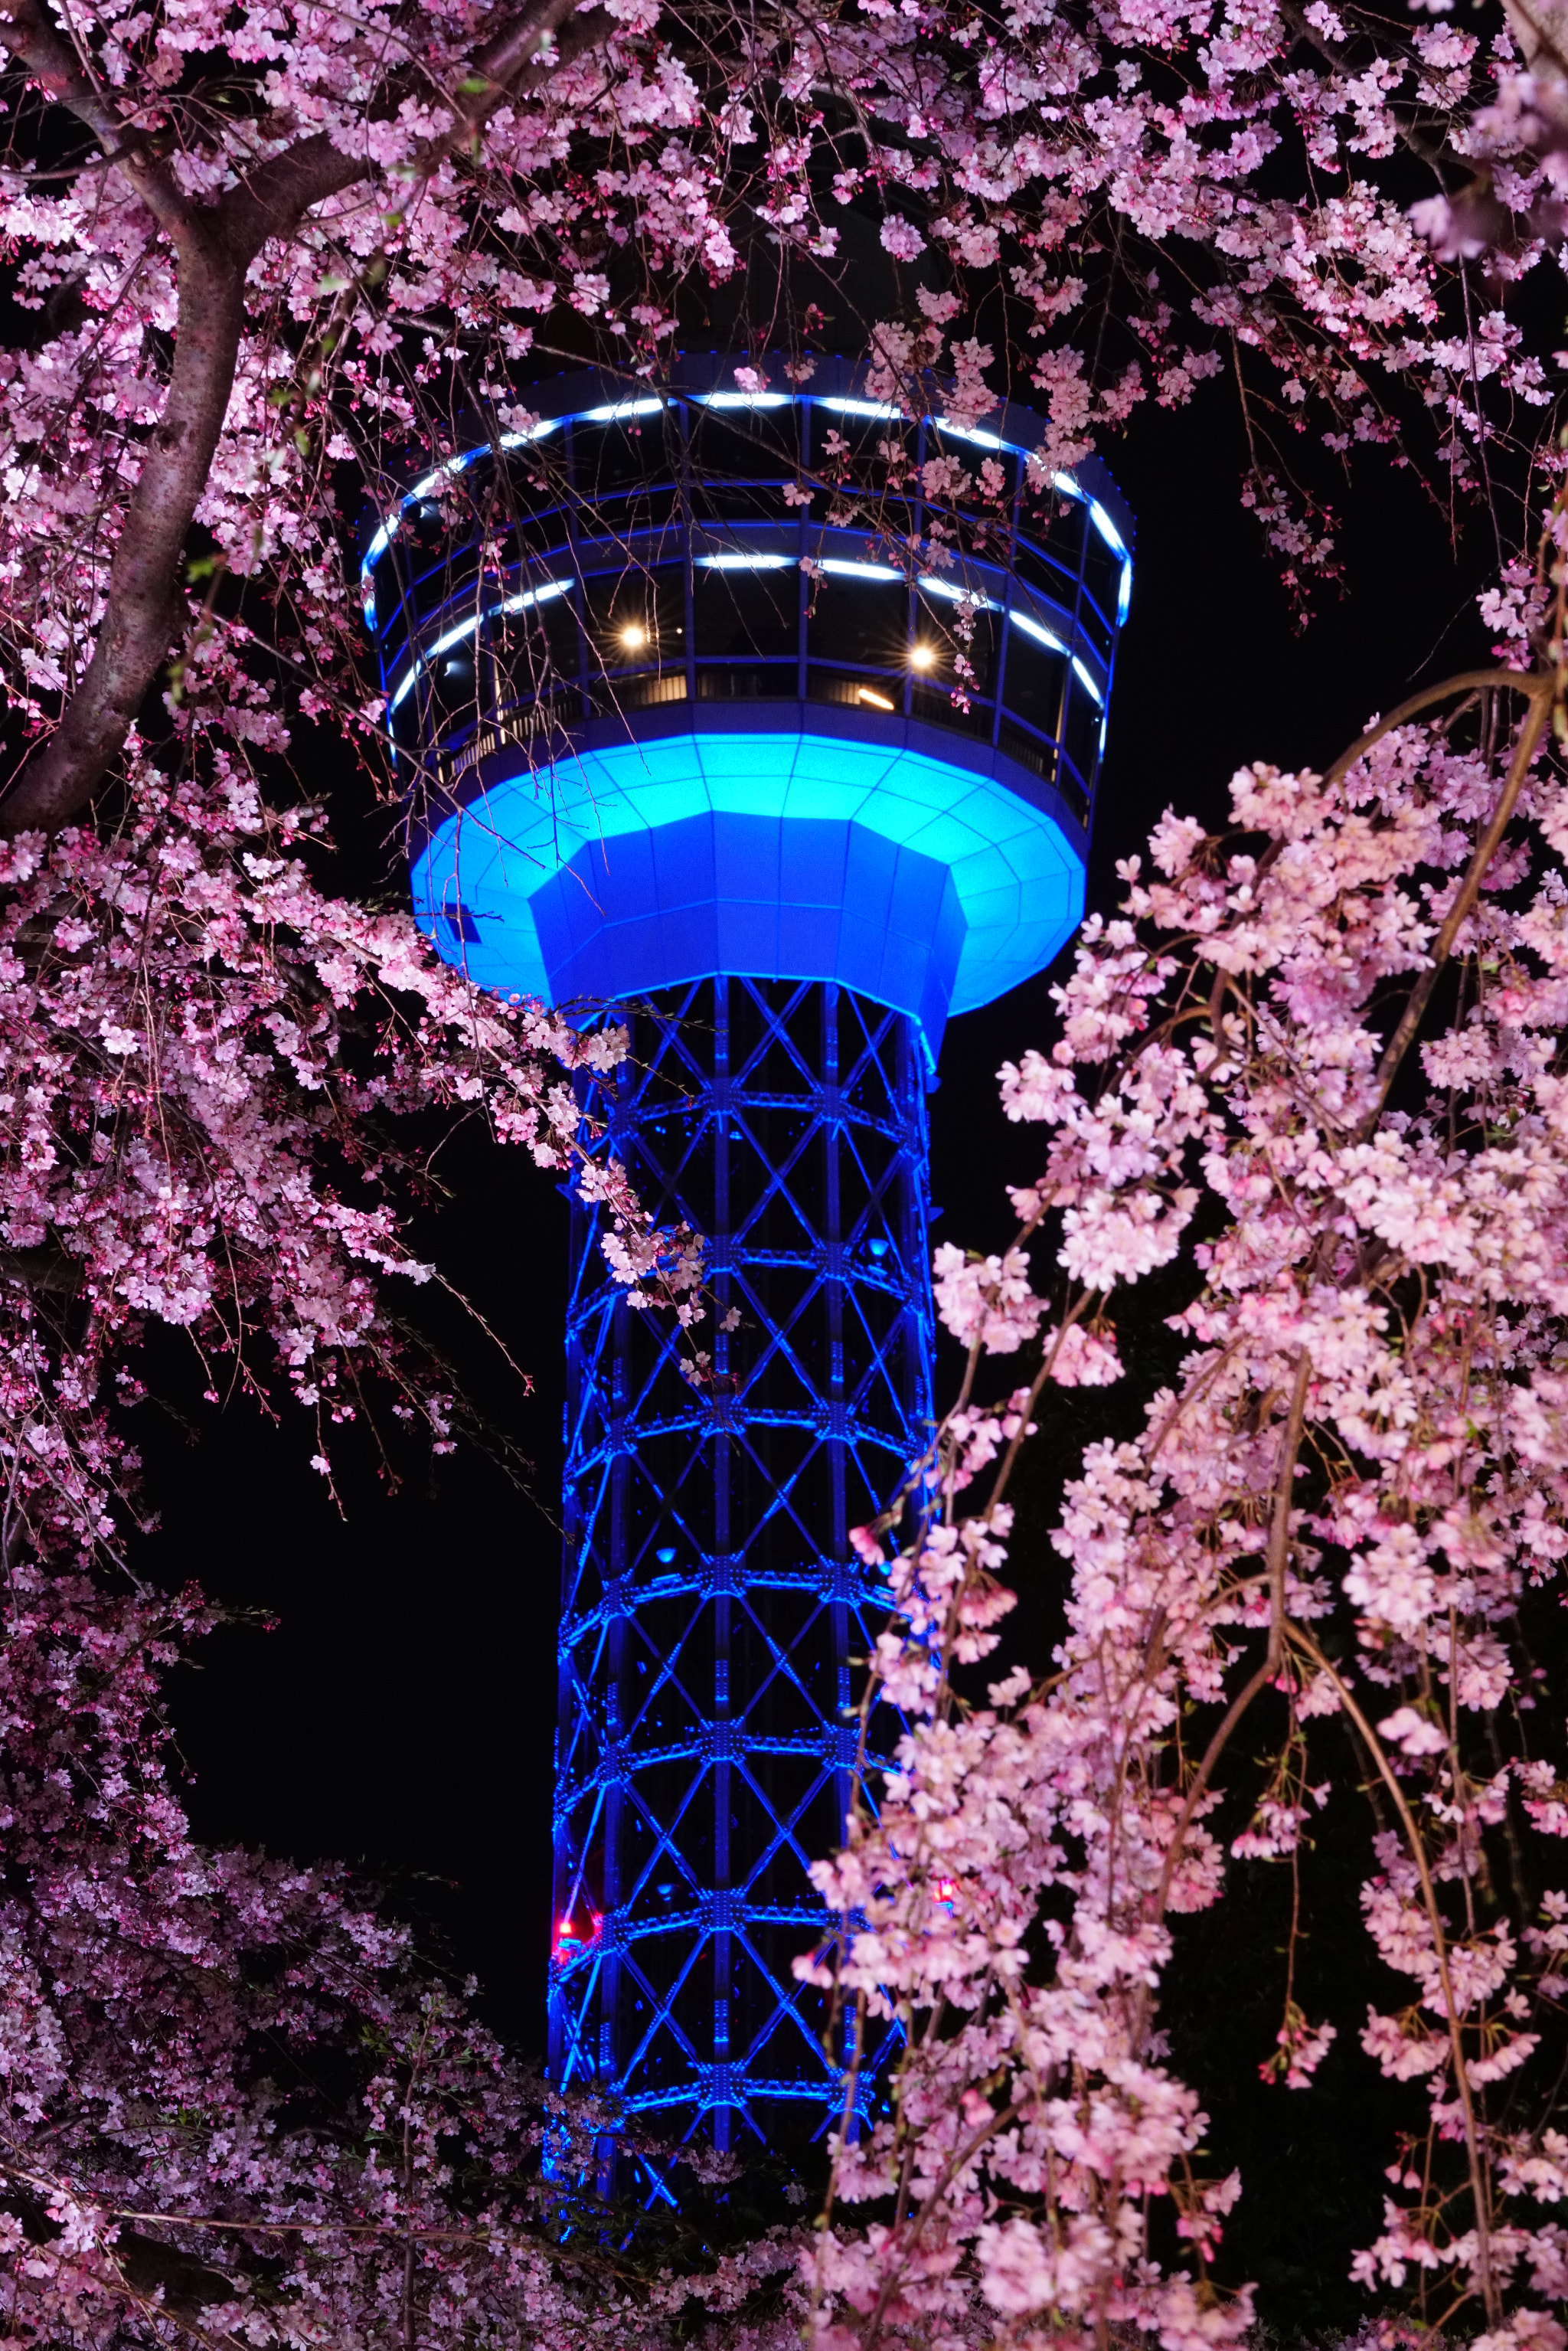 Sony FE 70-200mm F2.8 GM OSS sample photo. Yokohama marine tower & cherry blossom photography